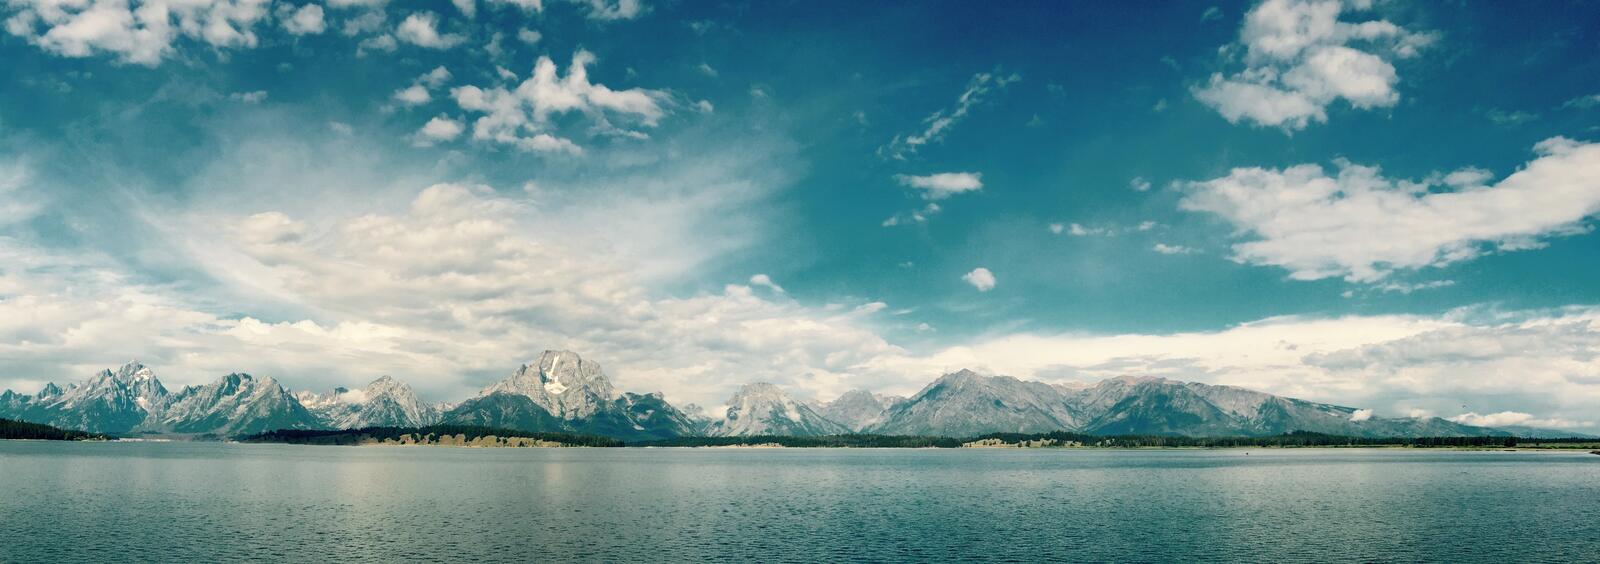 Бесплатное фото Большой пейзаж на котором изображено озеро с горами покрытыми снегом